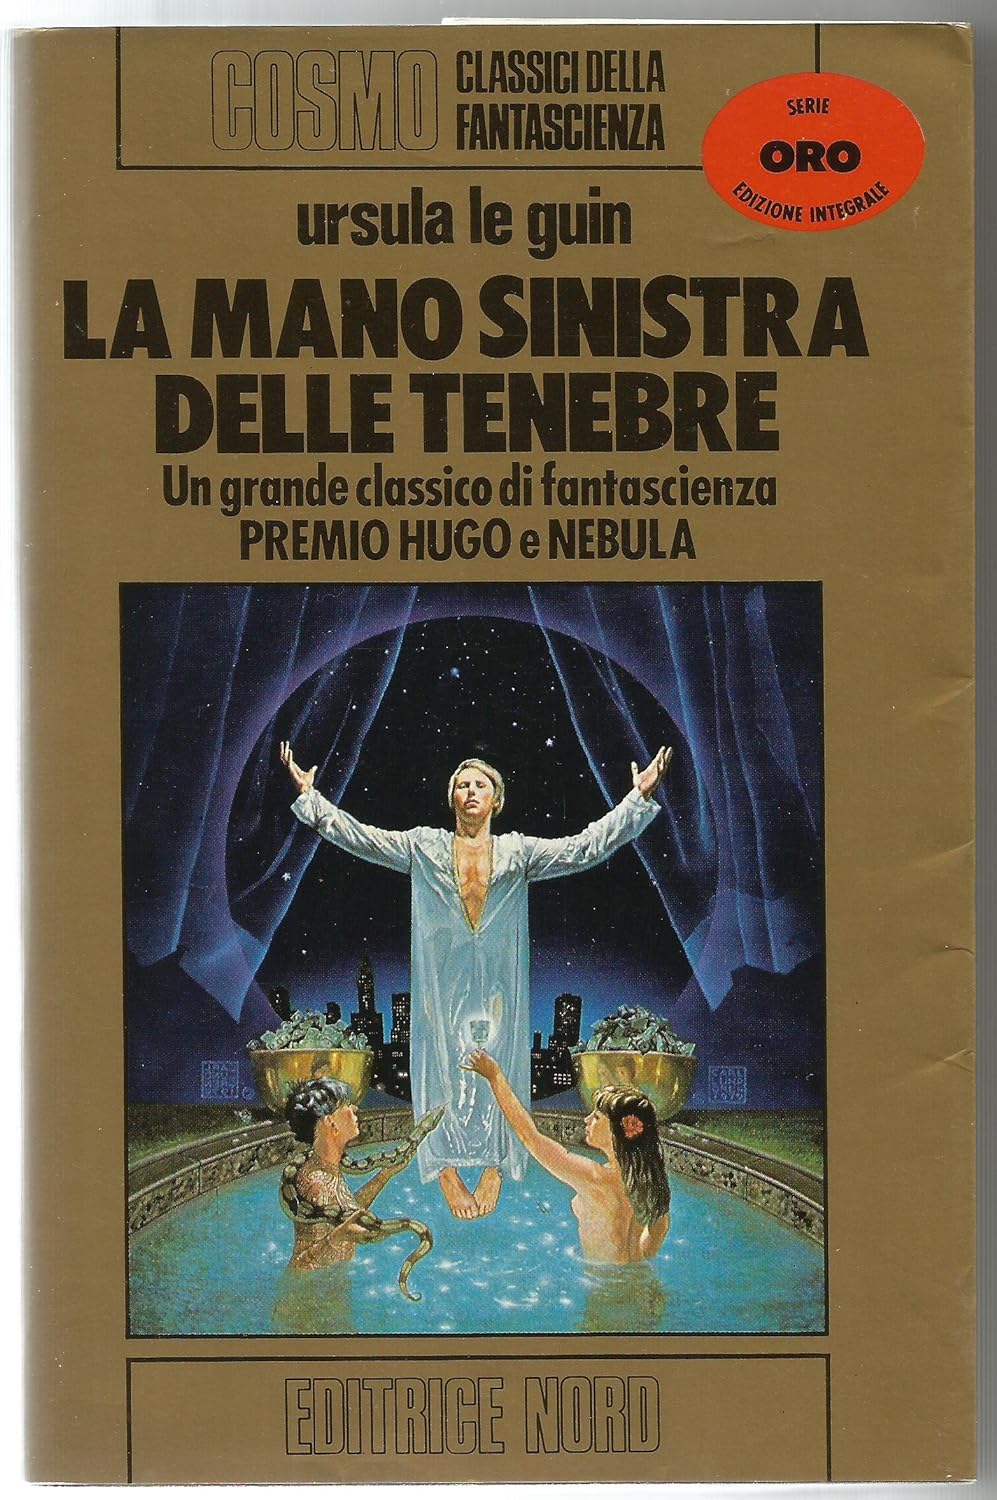 La mano sinistra delle tenebre (Paperback, Italiano language, 1984, Editrice Nord)